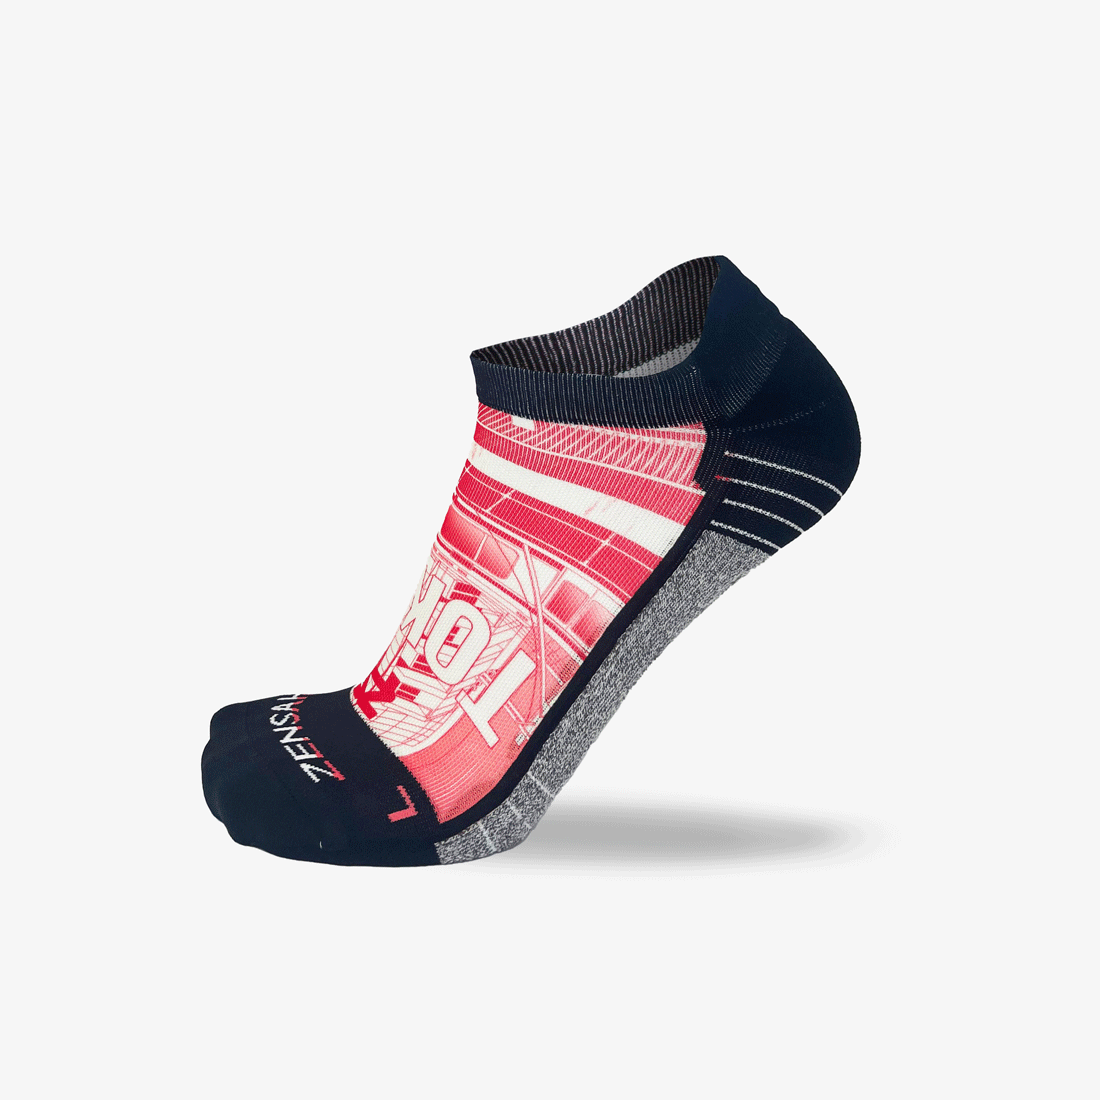 Tokyo Street Running Socks (No Show)Socks - Zensah